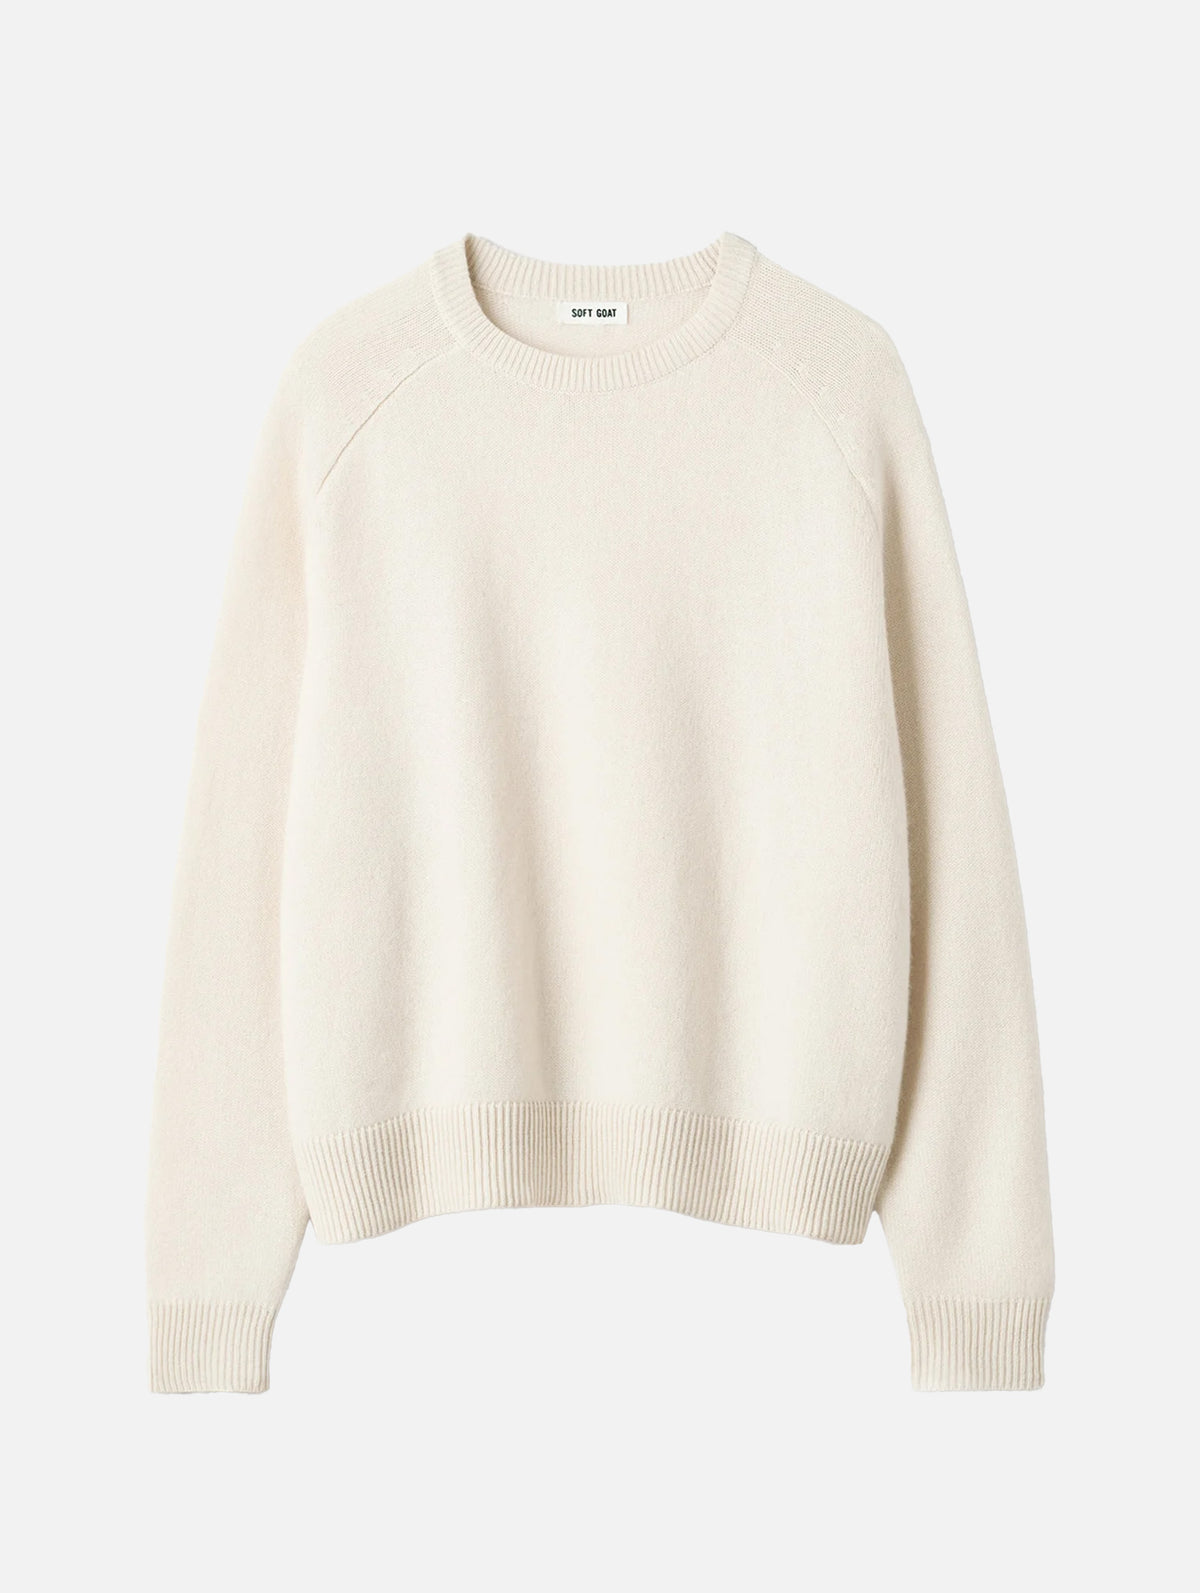 Boyfriend O-Neck Cashmere Sweater in Feather White